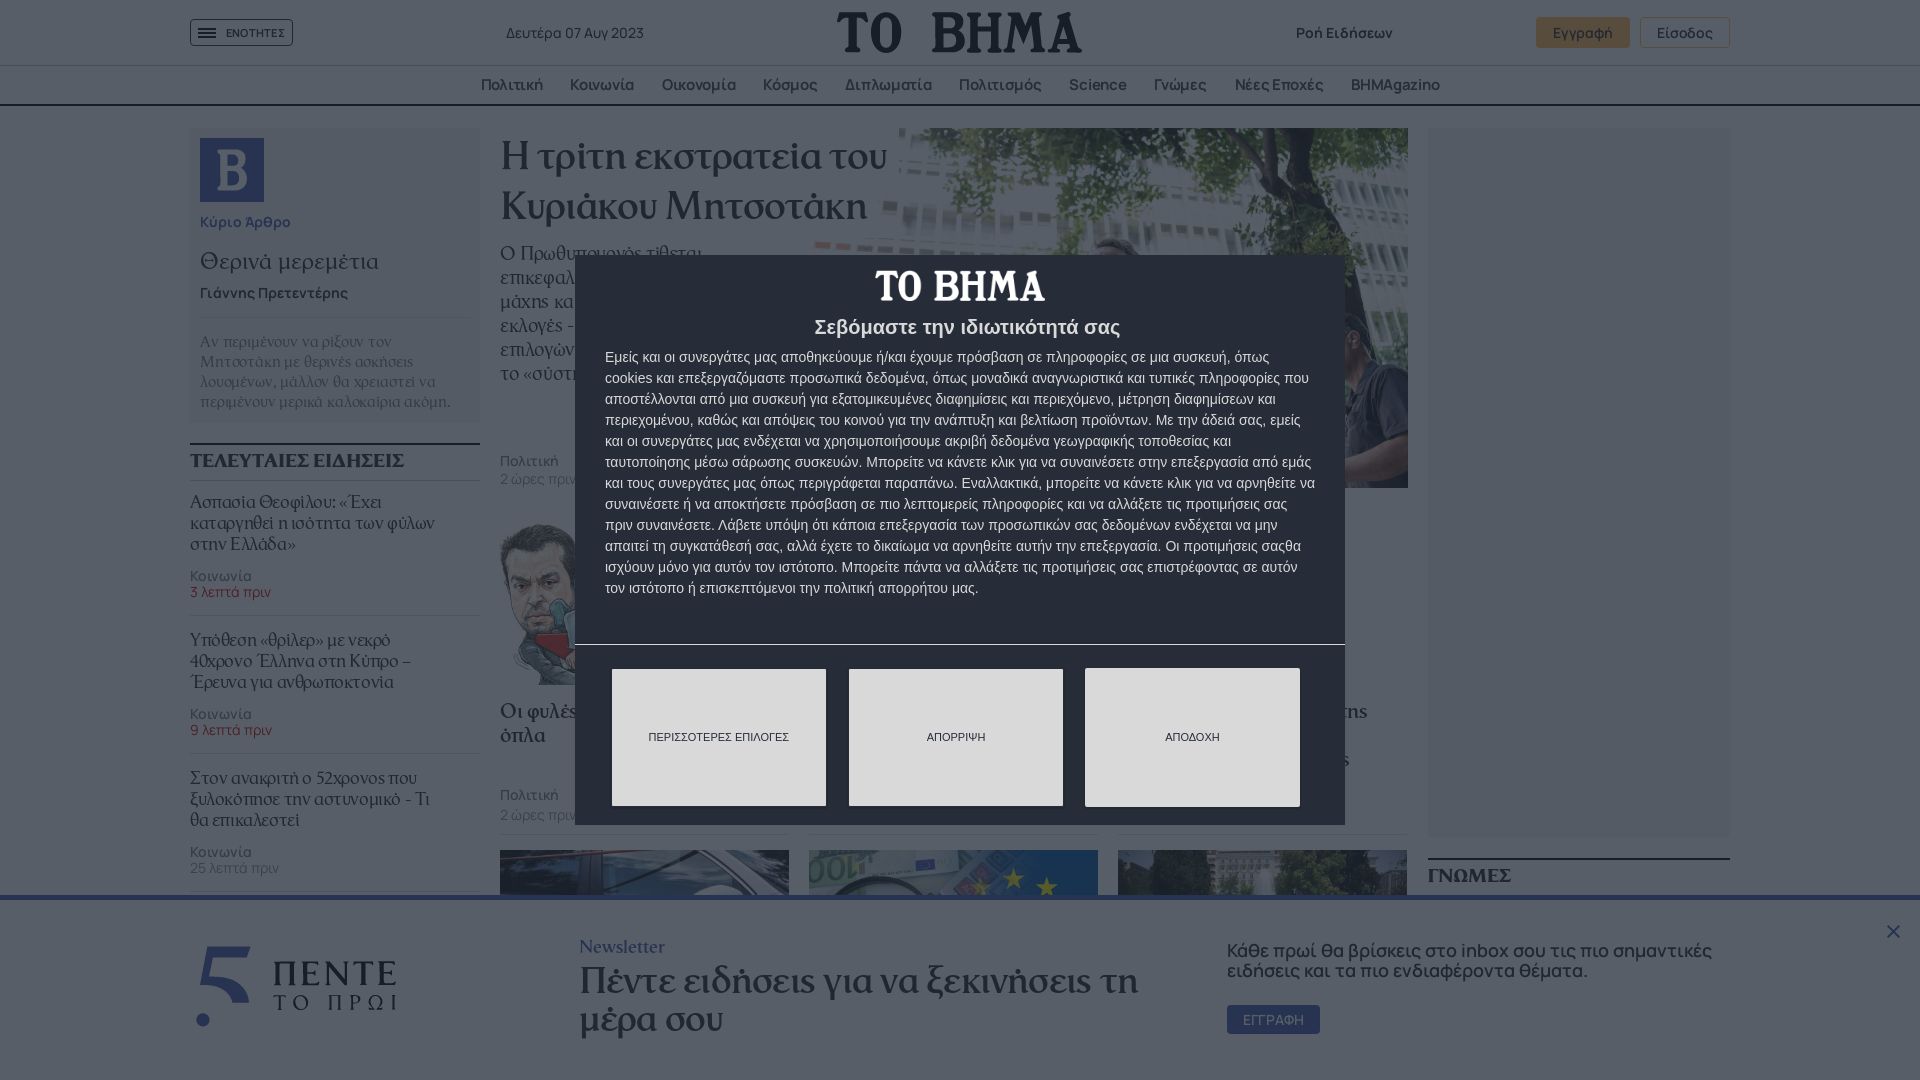 État du site web tovima.gr est   EN LIGNE